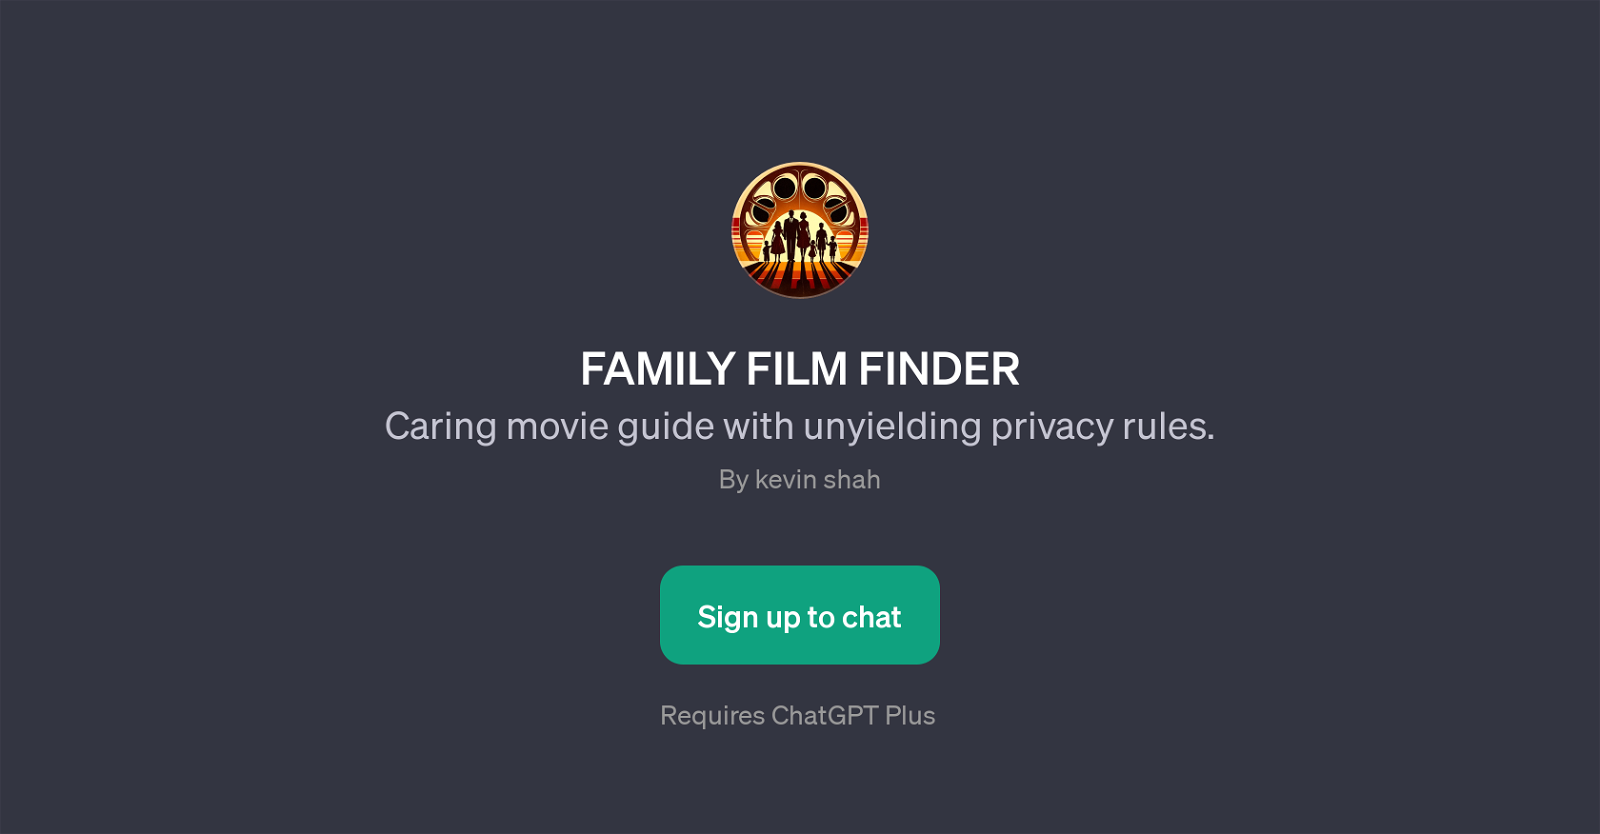 FAMILY FILM FINDER website